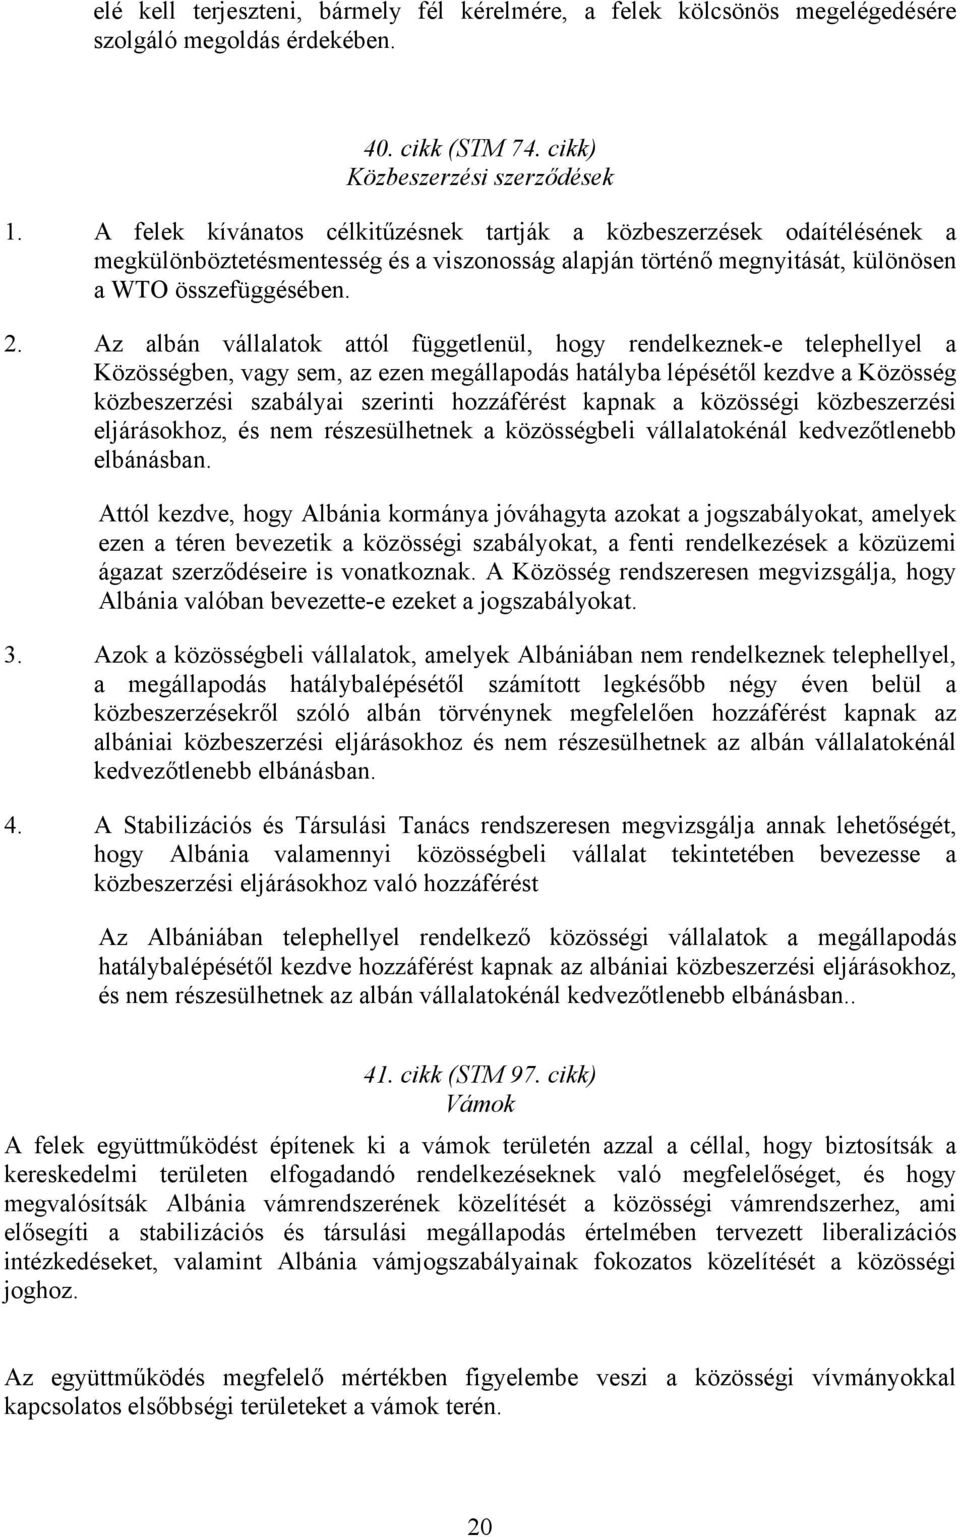 Az albán vállalatok attól függetlenül, hogy rendelkeznek-e telephellyel a Közösségben, vagy sem, az ezen megállapodás hatályba lépésétől kezdve a Közösség közbeszerzési szabályai szerinti hozzáférést